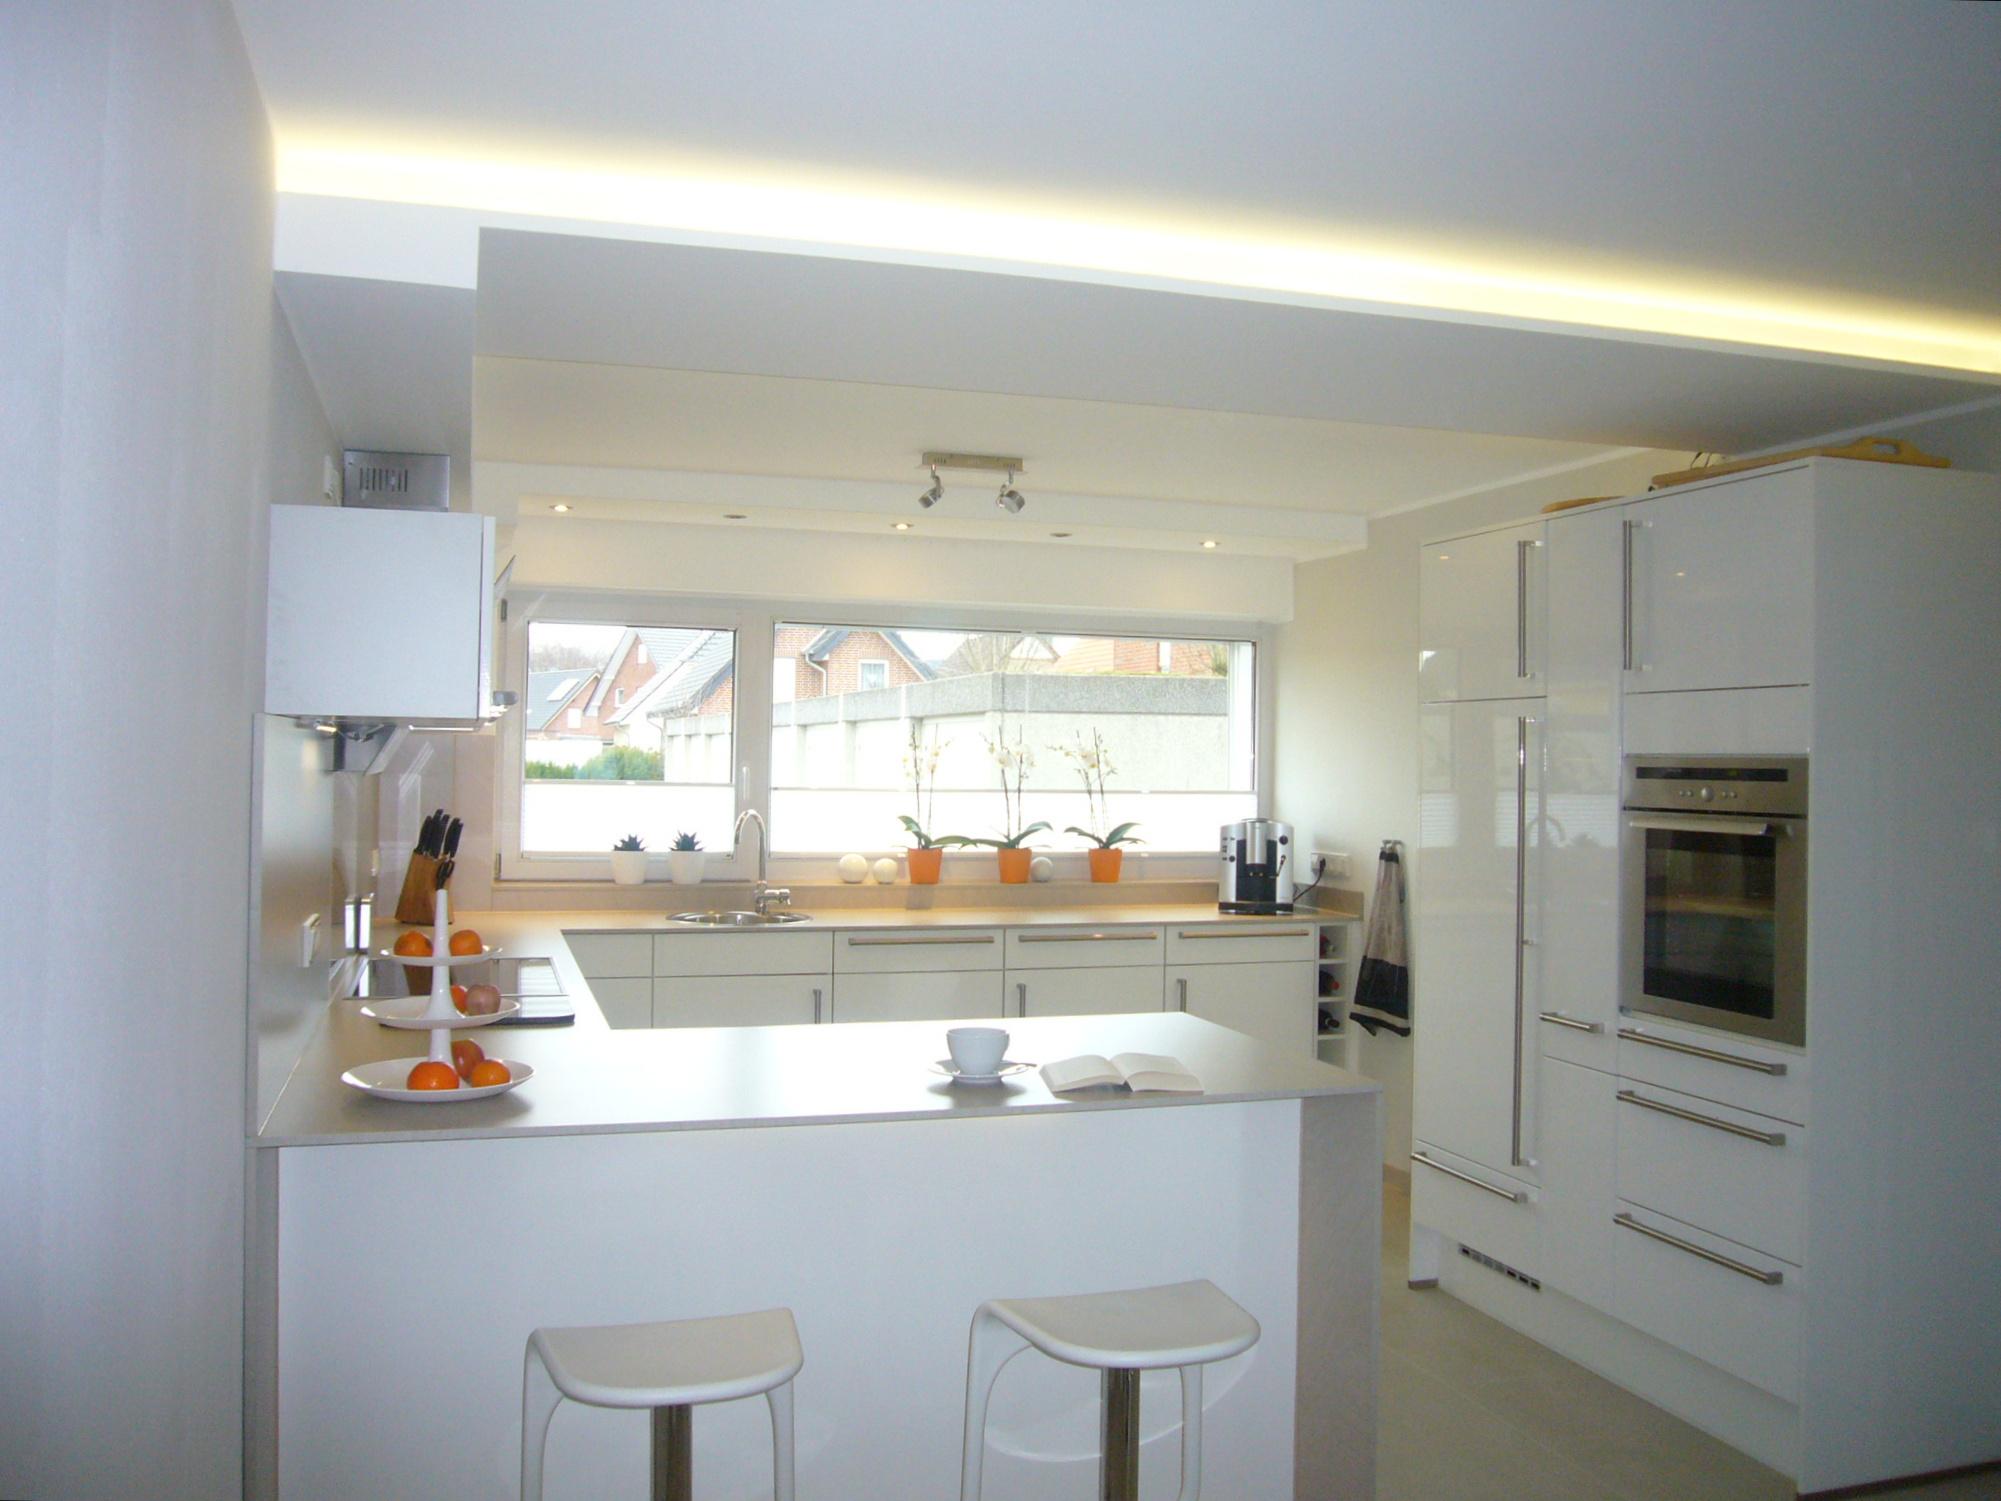 Raumgestaltung Küche #küche #weißeküche #indirektebeleuchtung #offeneküche #raumgestaltung #esstheke ©raum2 - Susanne Michel